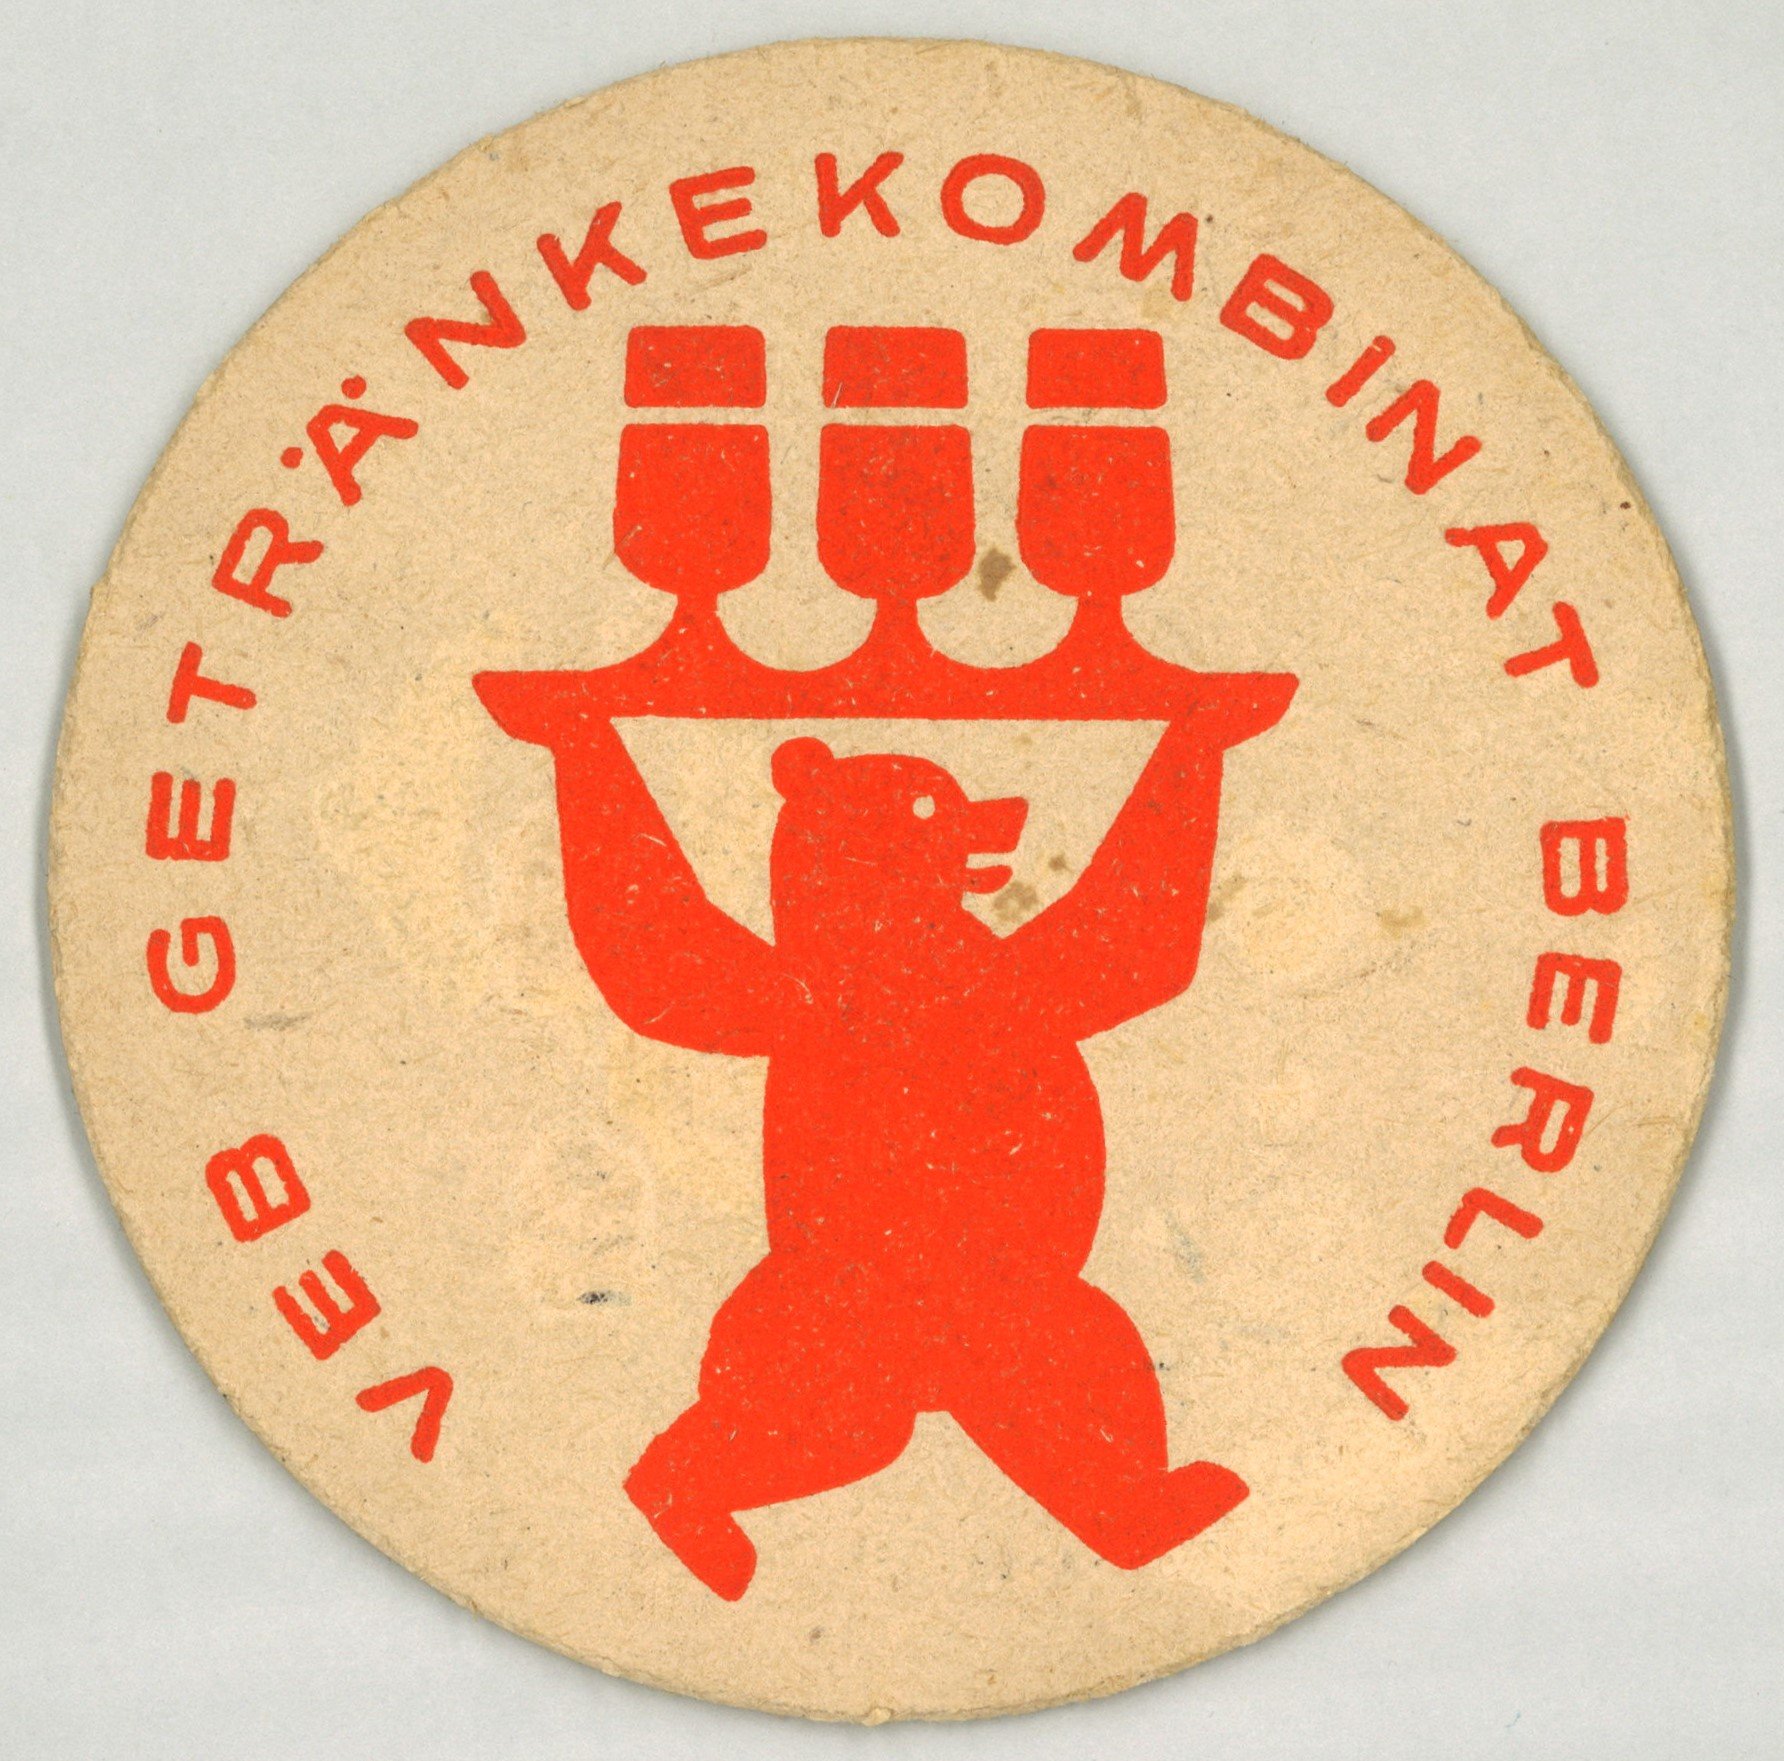 Berlin (Ost): VEB Getränkekombinat Berlin (Landesgeschichtliche Vereinigung für die Mark Brandenburg e.V., Archiv CC BY)